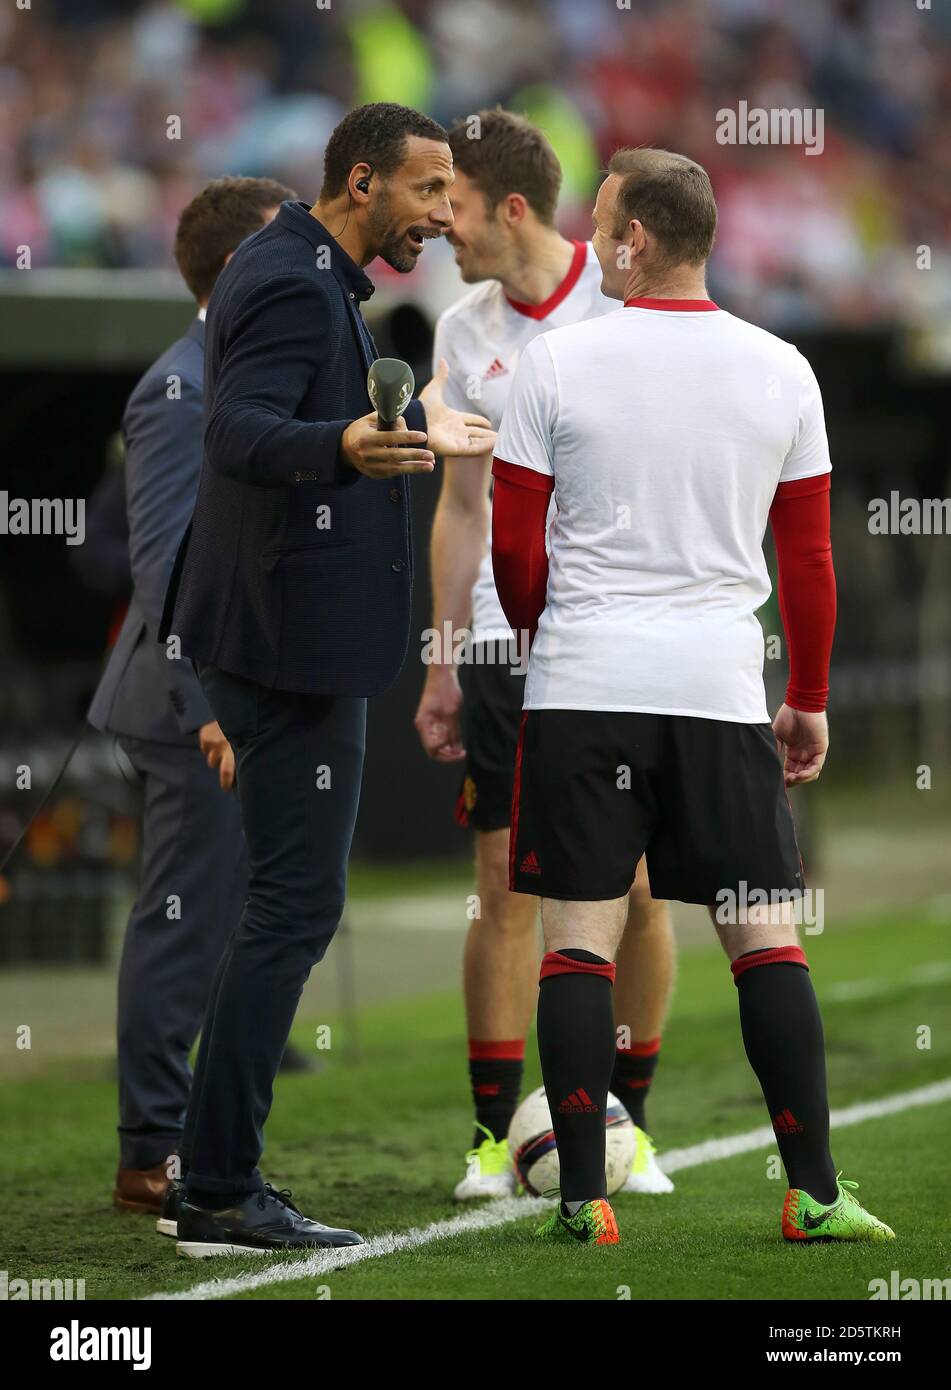 Rio Ferdinand (à gauche) parle avec son ancien coéquipier de Manchester  United Wayne Rooney avant le match Photo Stock - Alamy